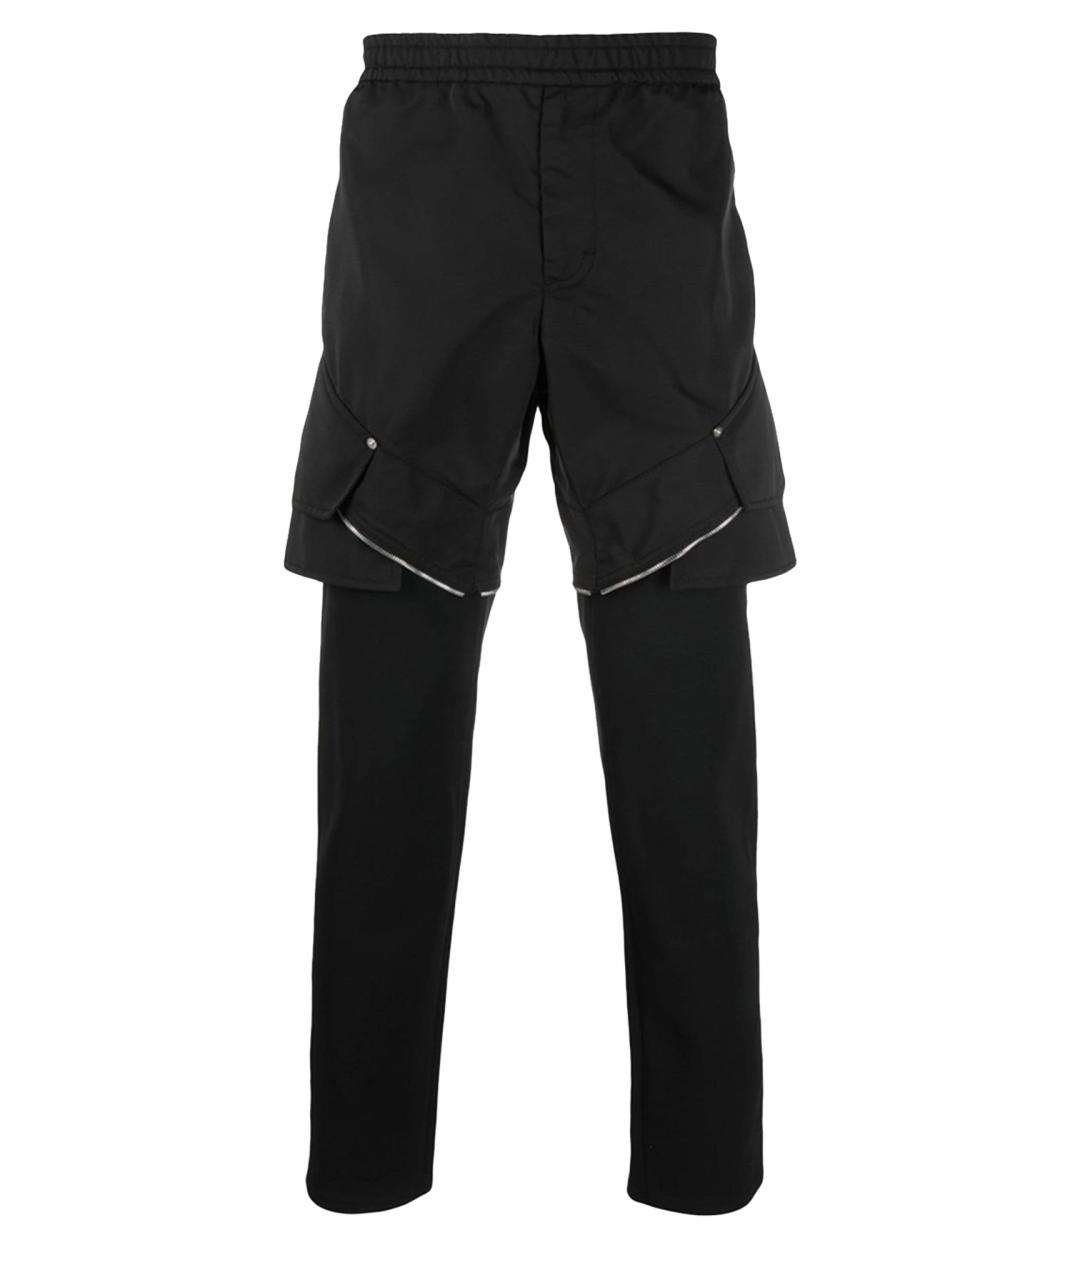 1017 ALYX 9SM Черные полиамидовые спортивные брюки и шорты, фото 1